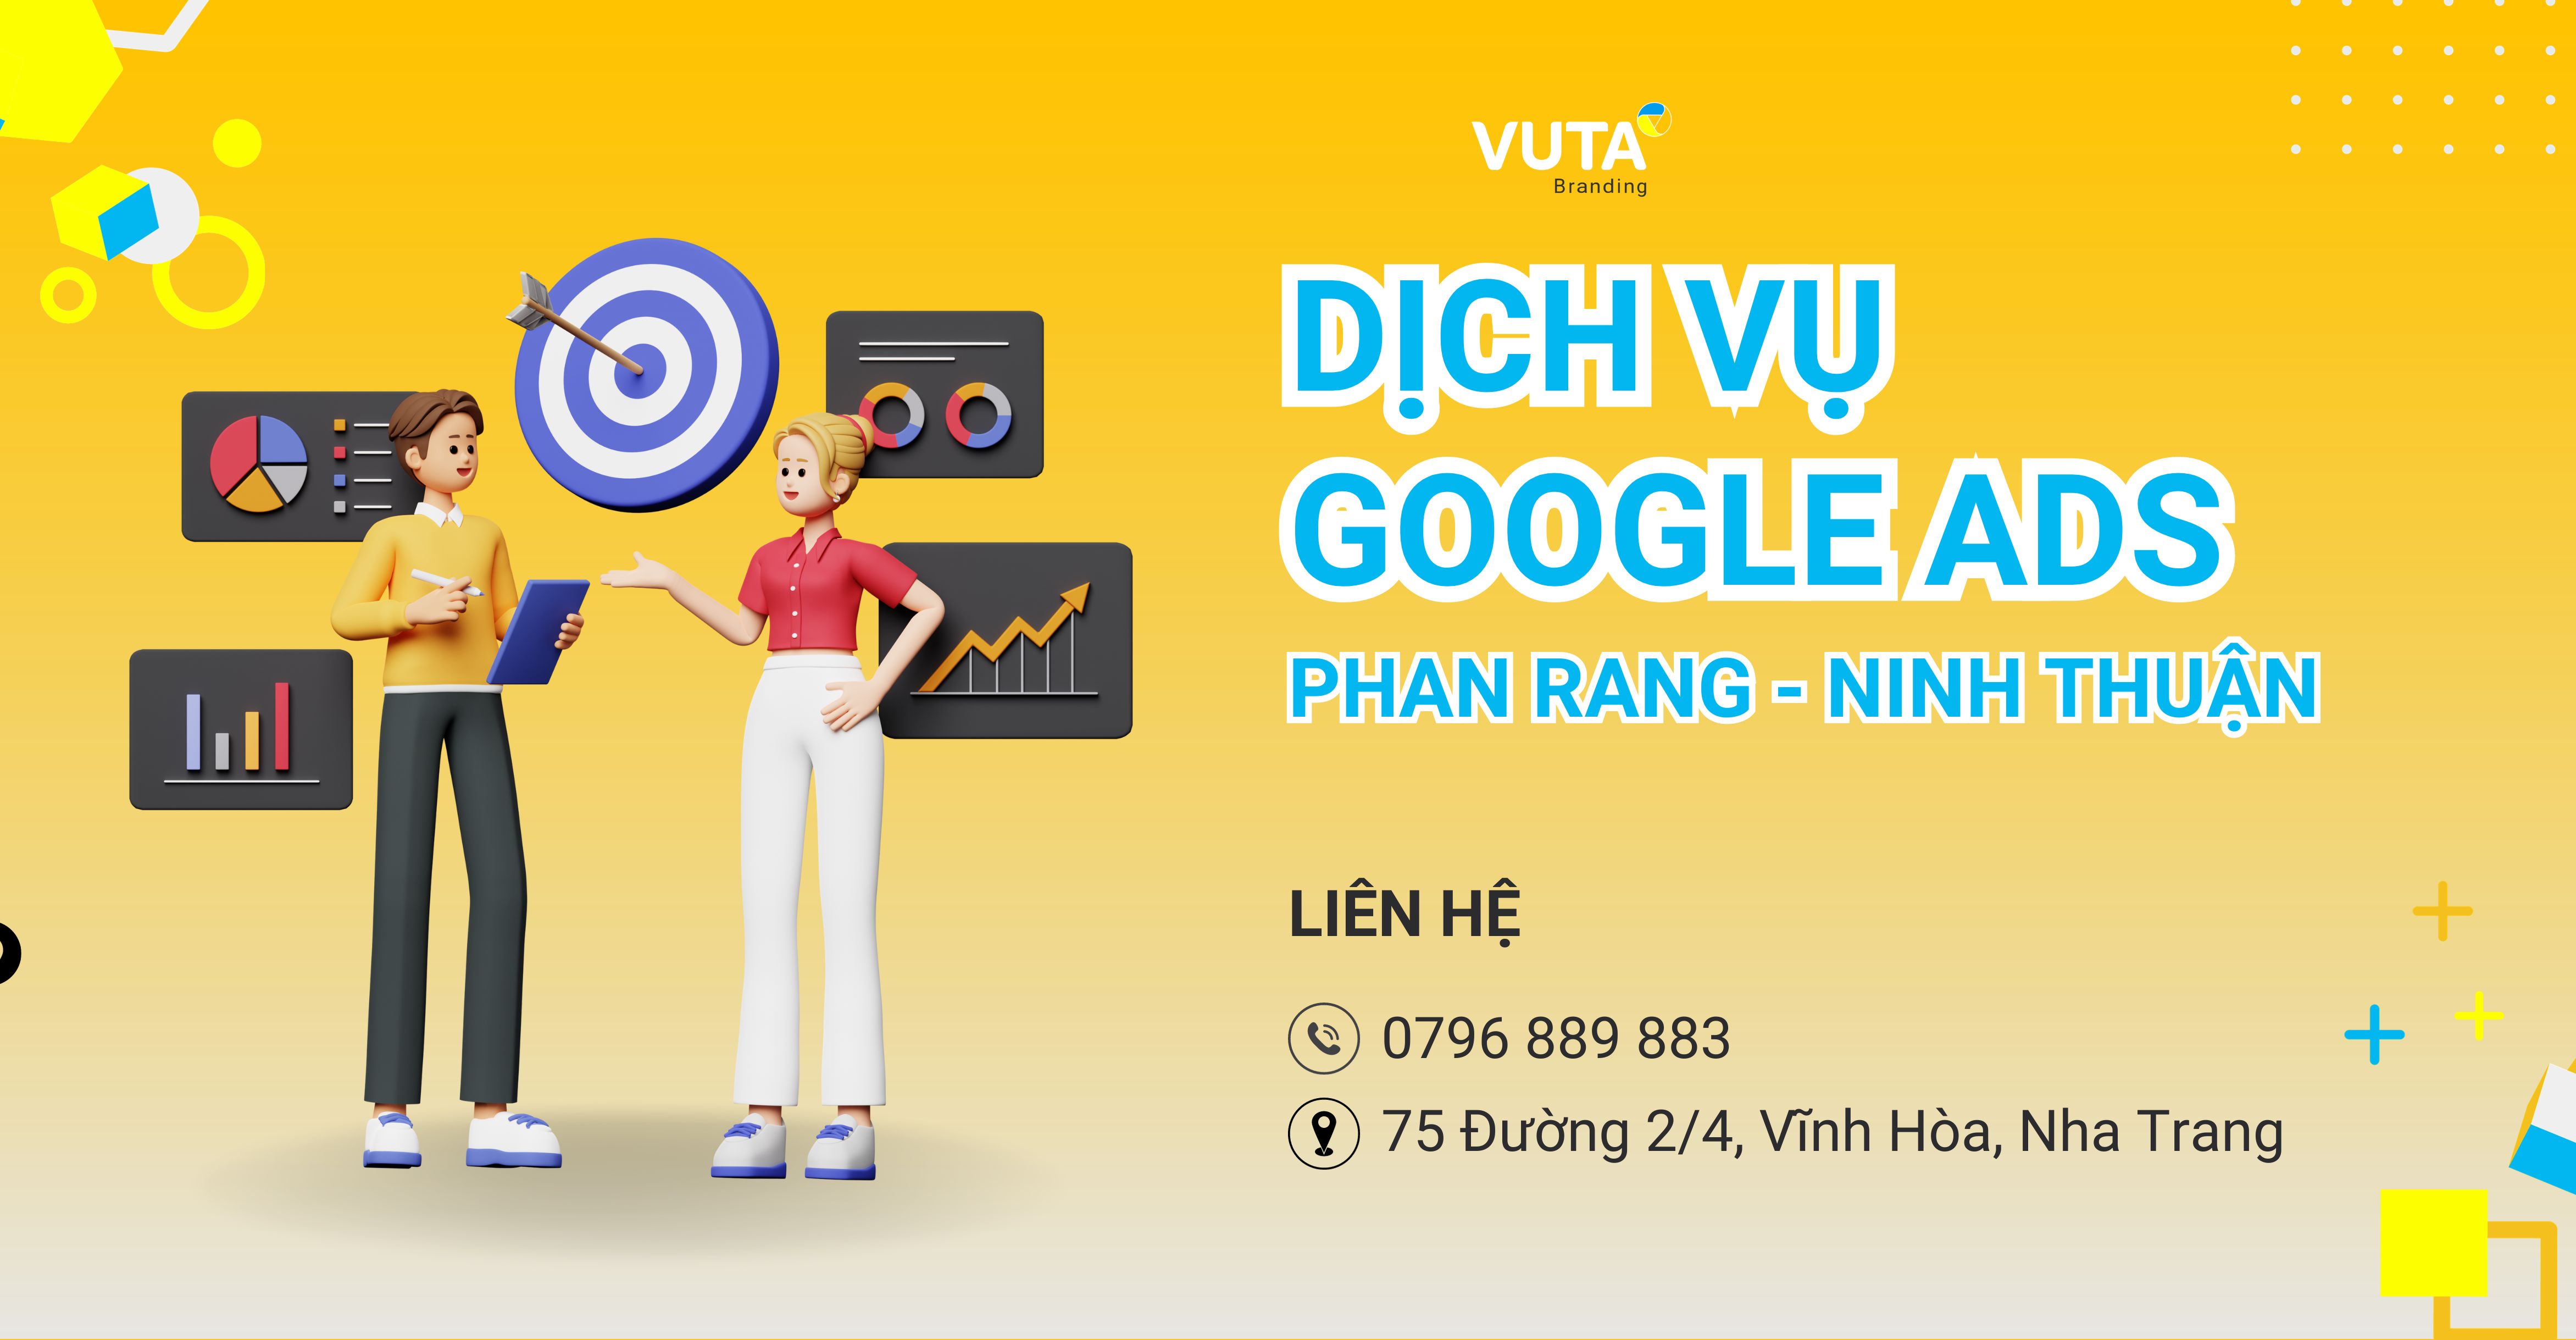 Quảng Cáo Google Phan Rang - Ninh Thuận Uy Tín, Chuyên Nghiệp